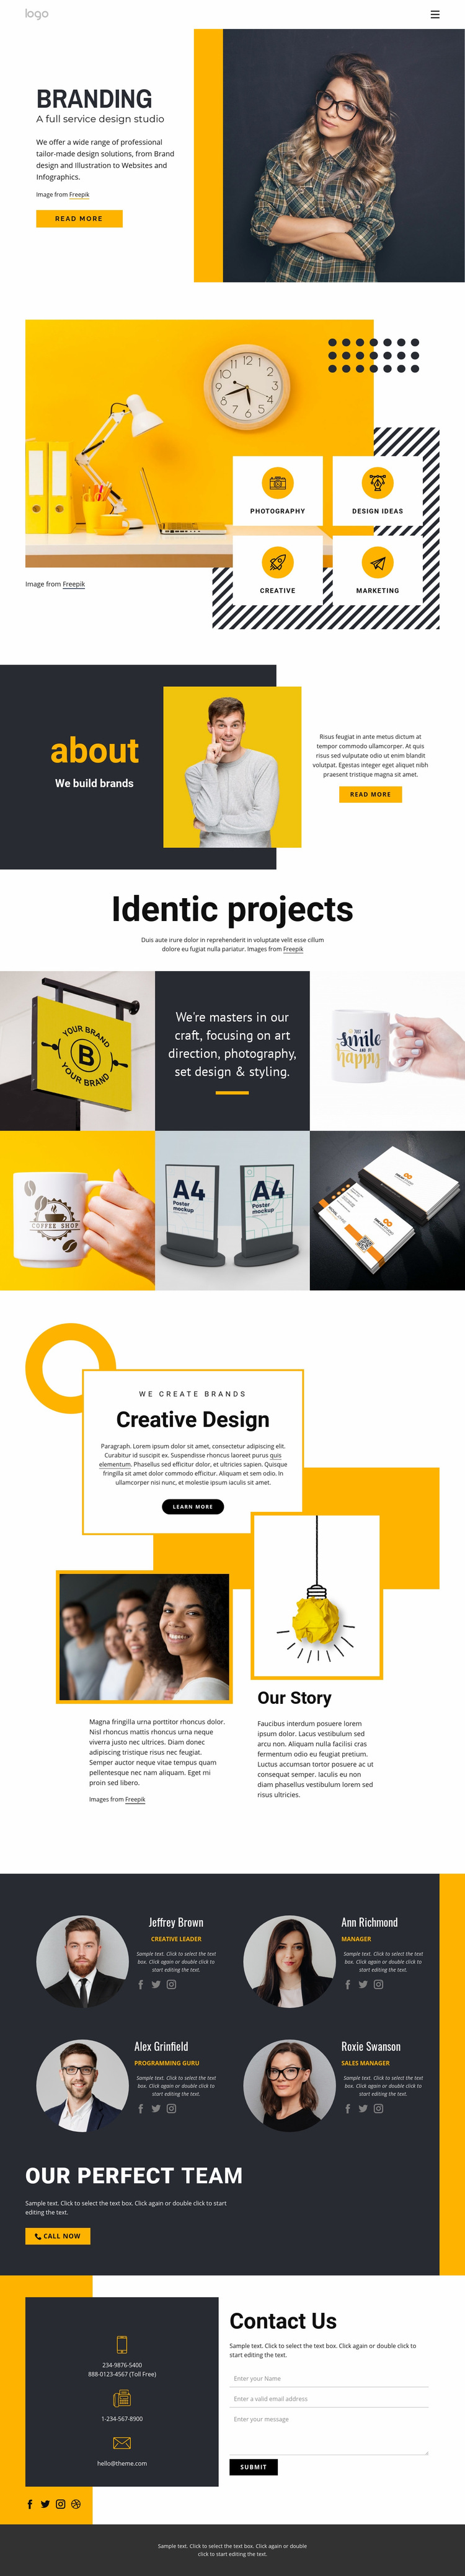 Full-service design studio Web Page Design